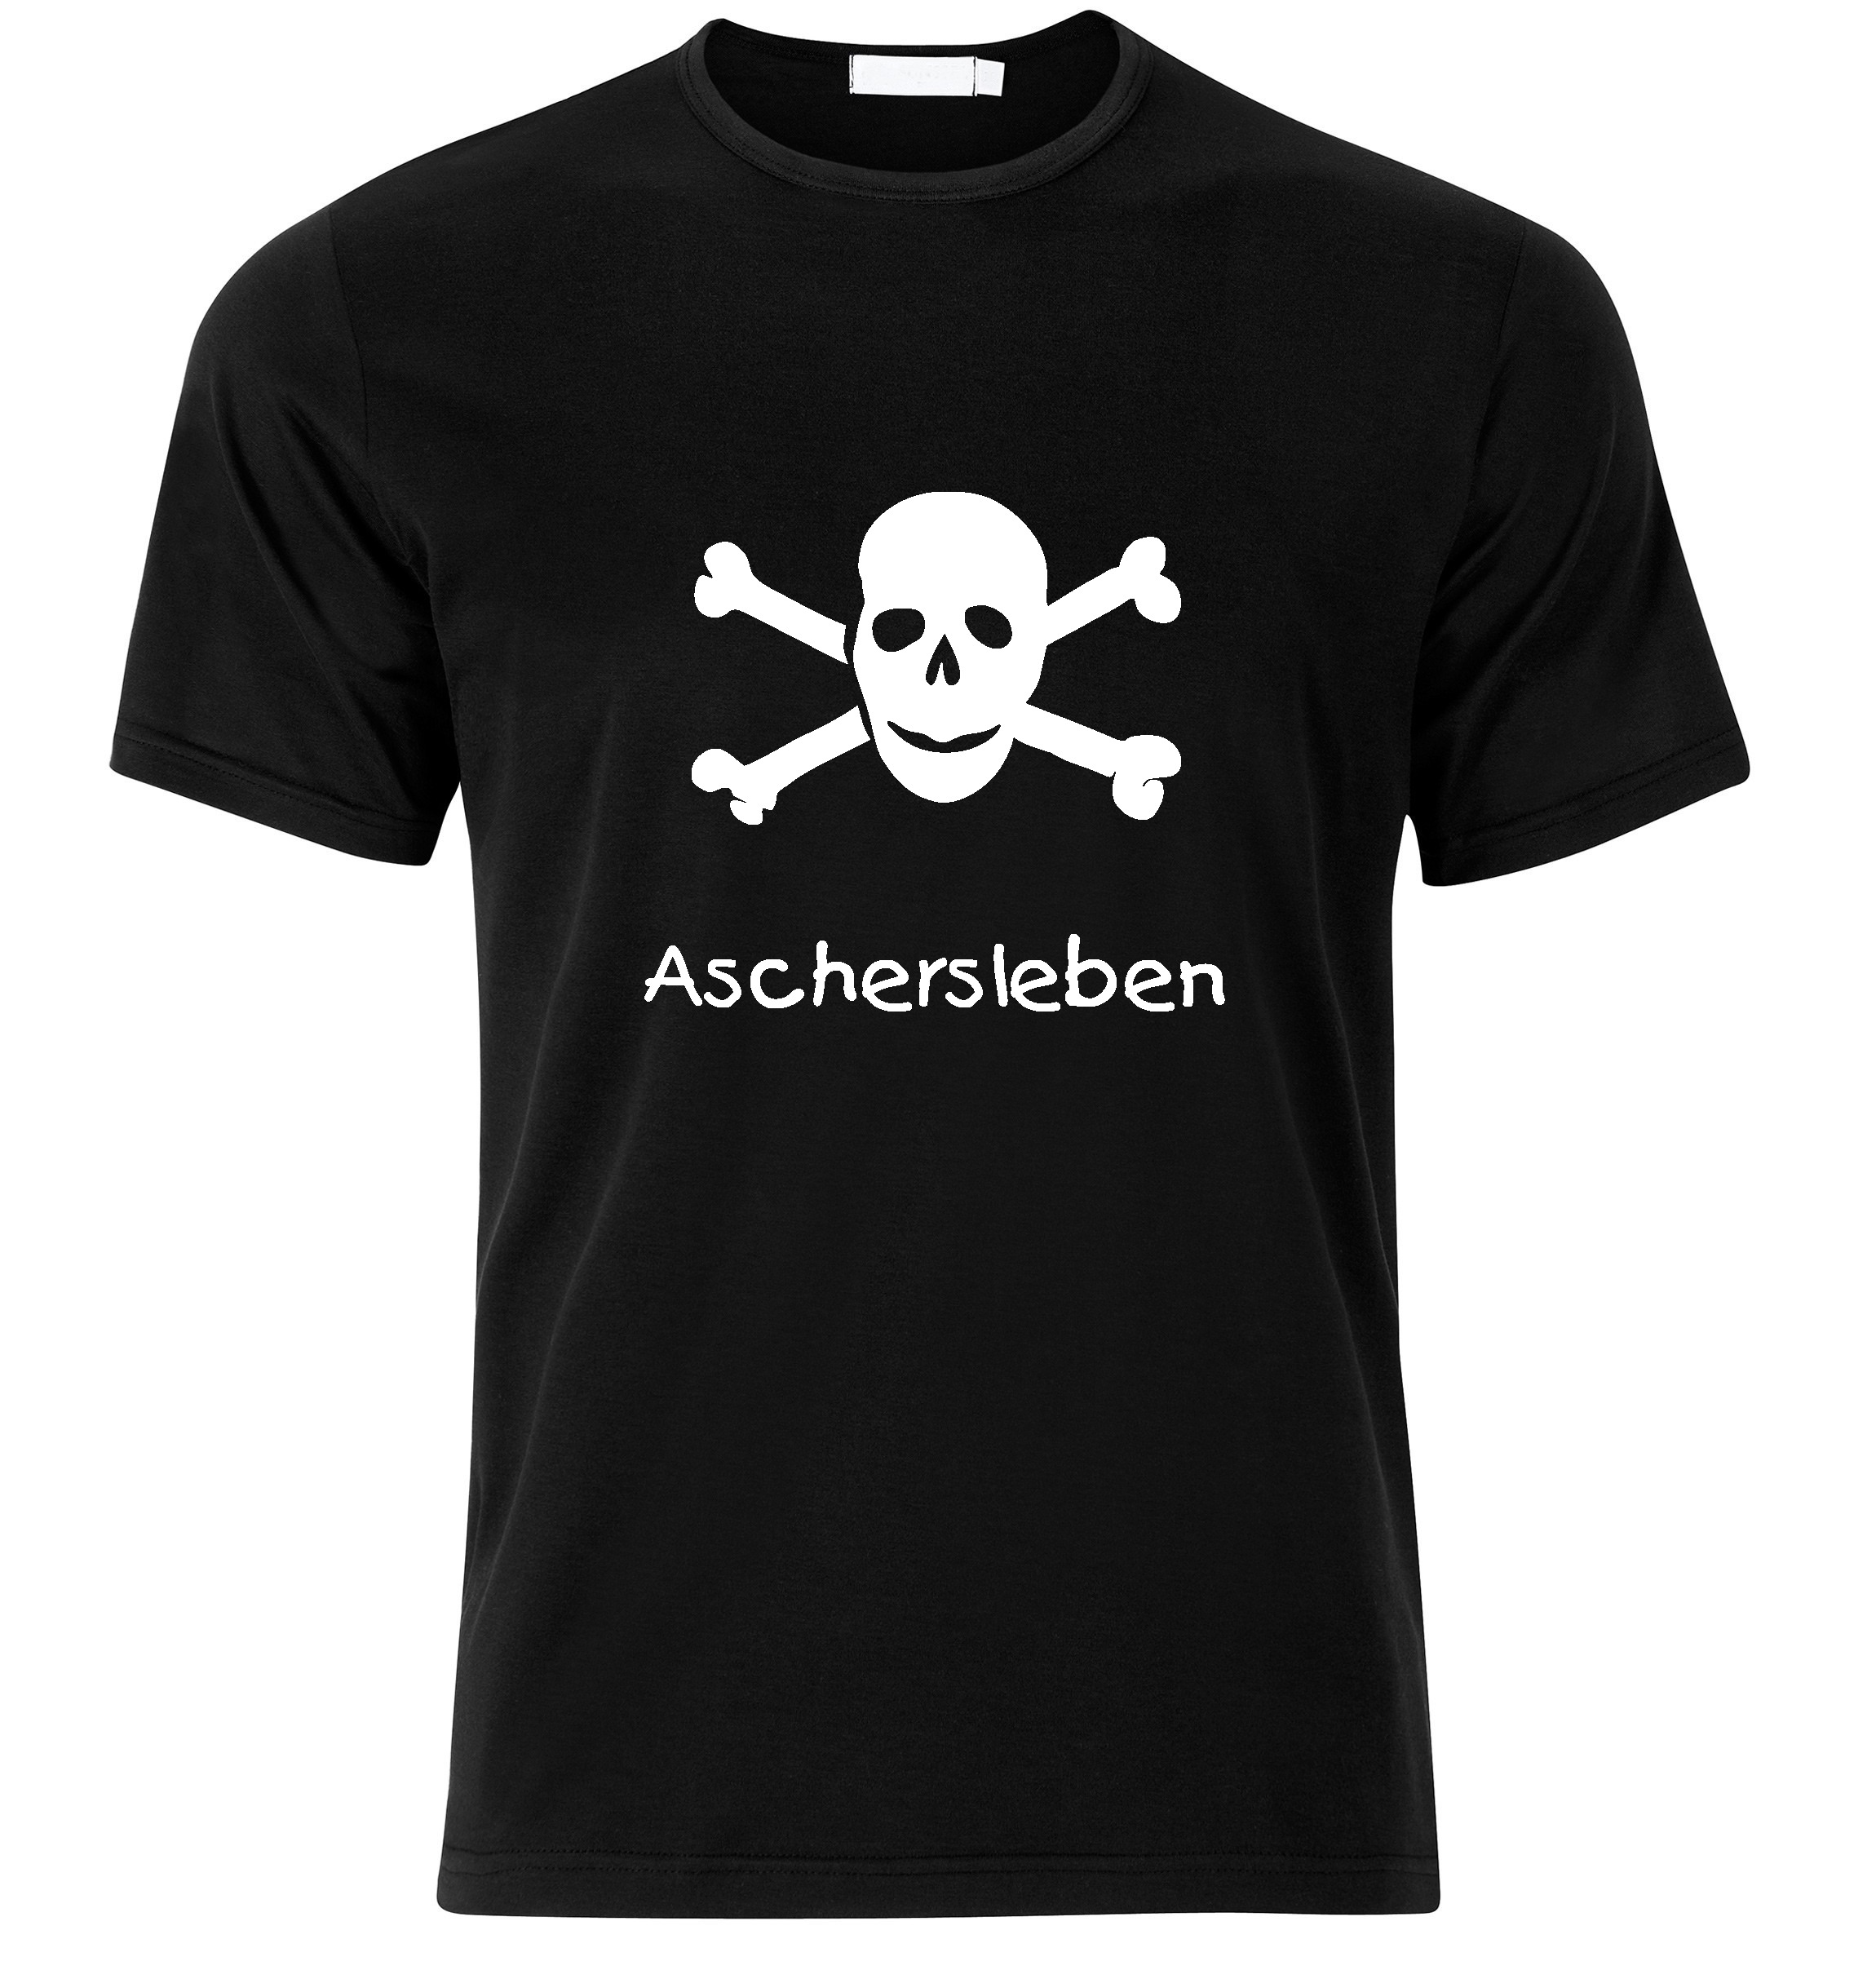 T-Shirt Aschersleben Jolly Roger, Totenkopf